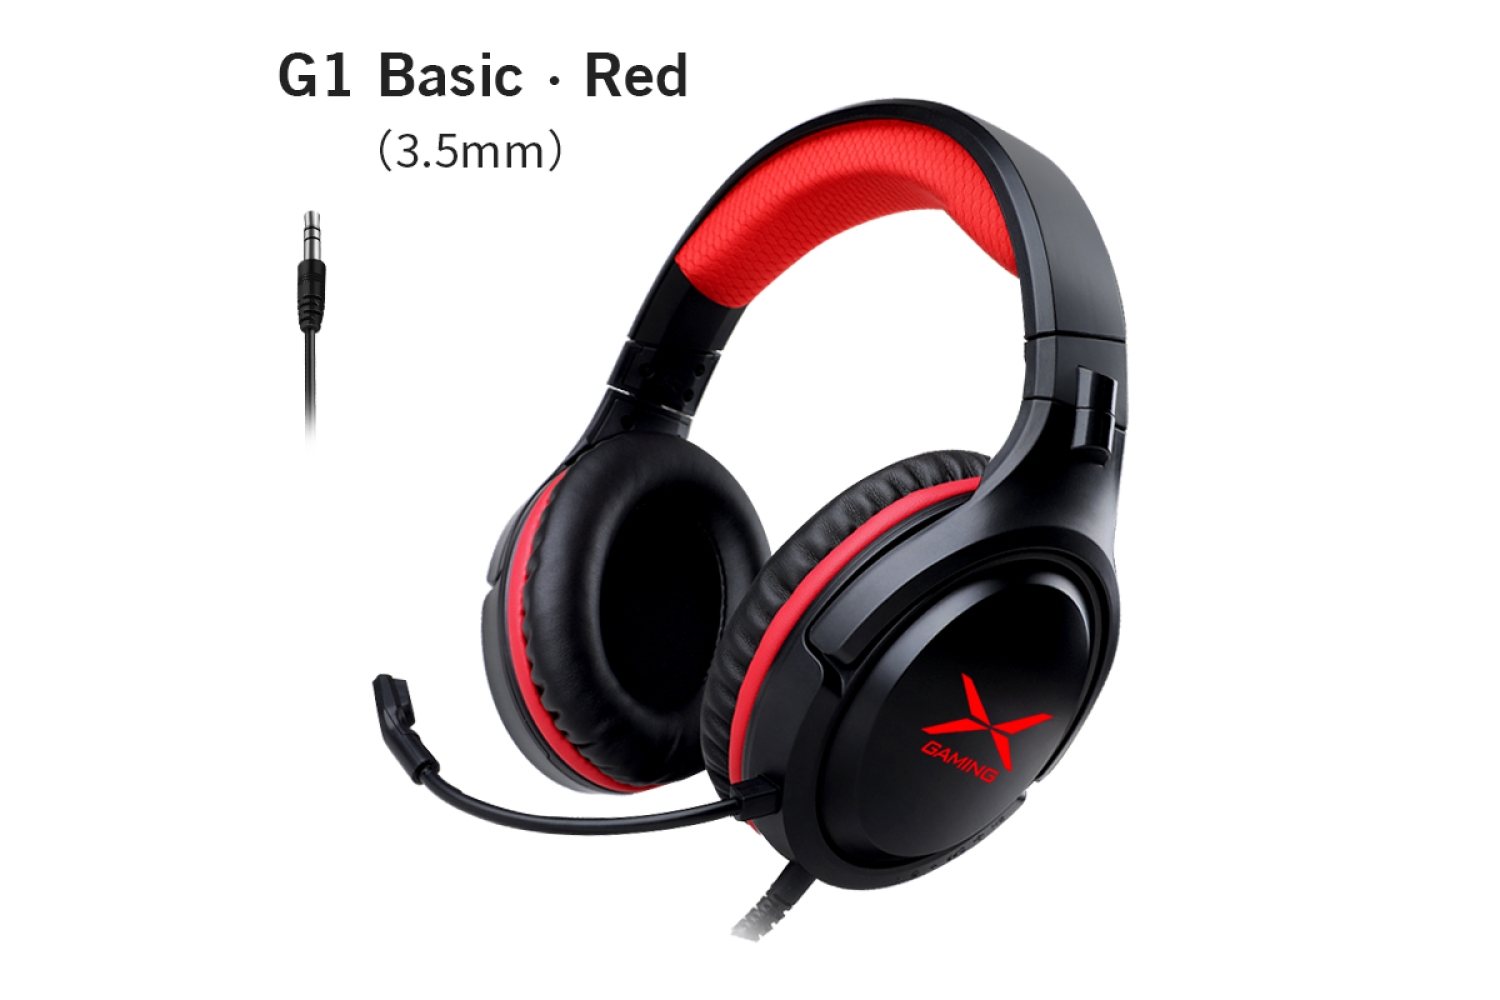 G1 Basic Red Gaming Headset